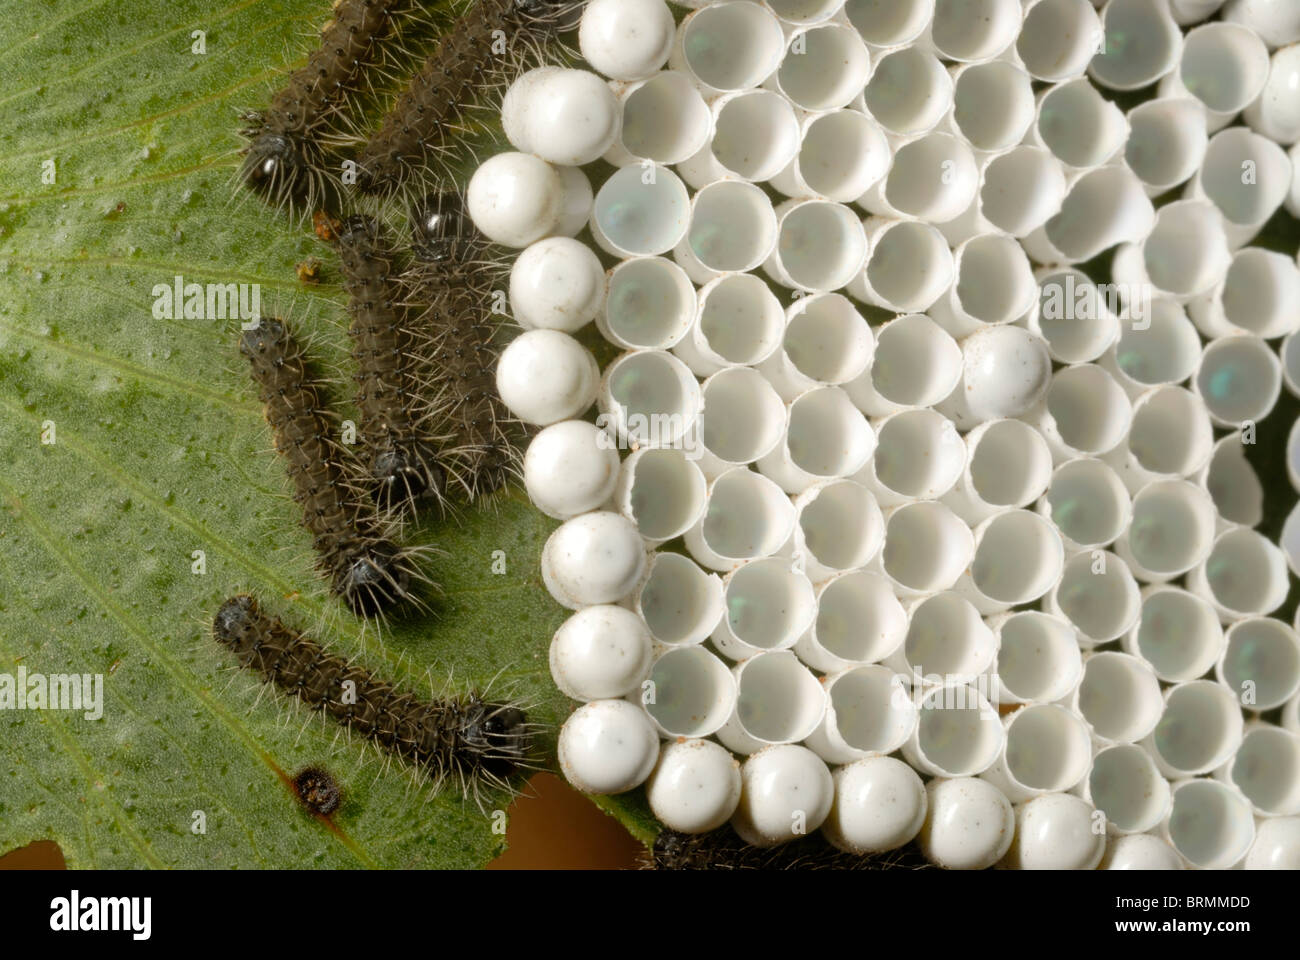 Geschlüpft und ungeschlüpfte Mopani Wurm Eiern auf einem Mopane-Blatt Stockfoto